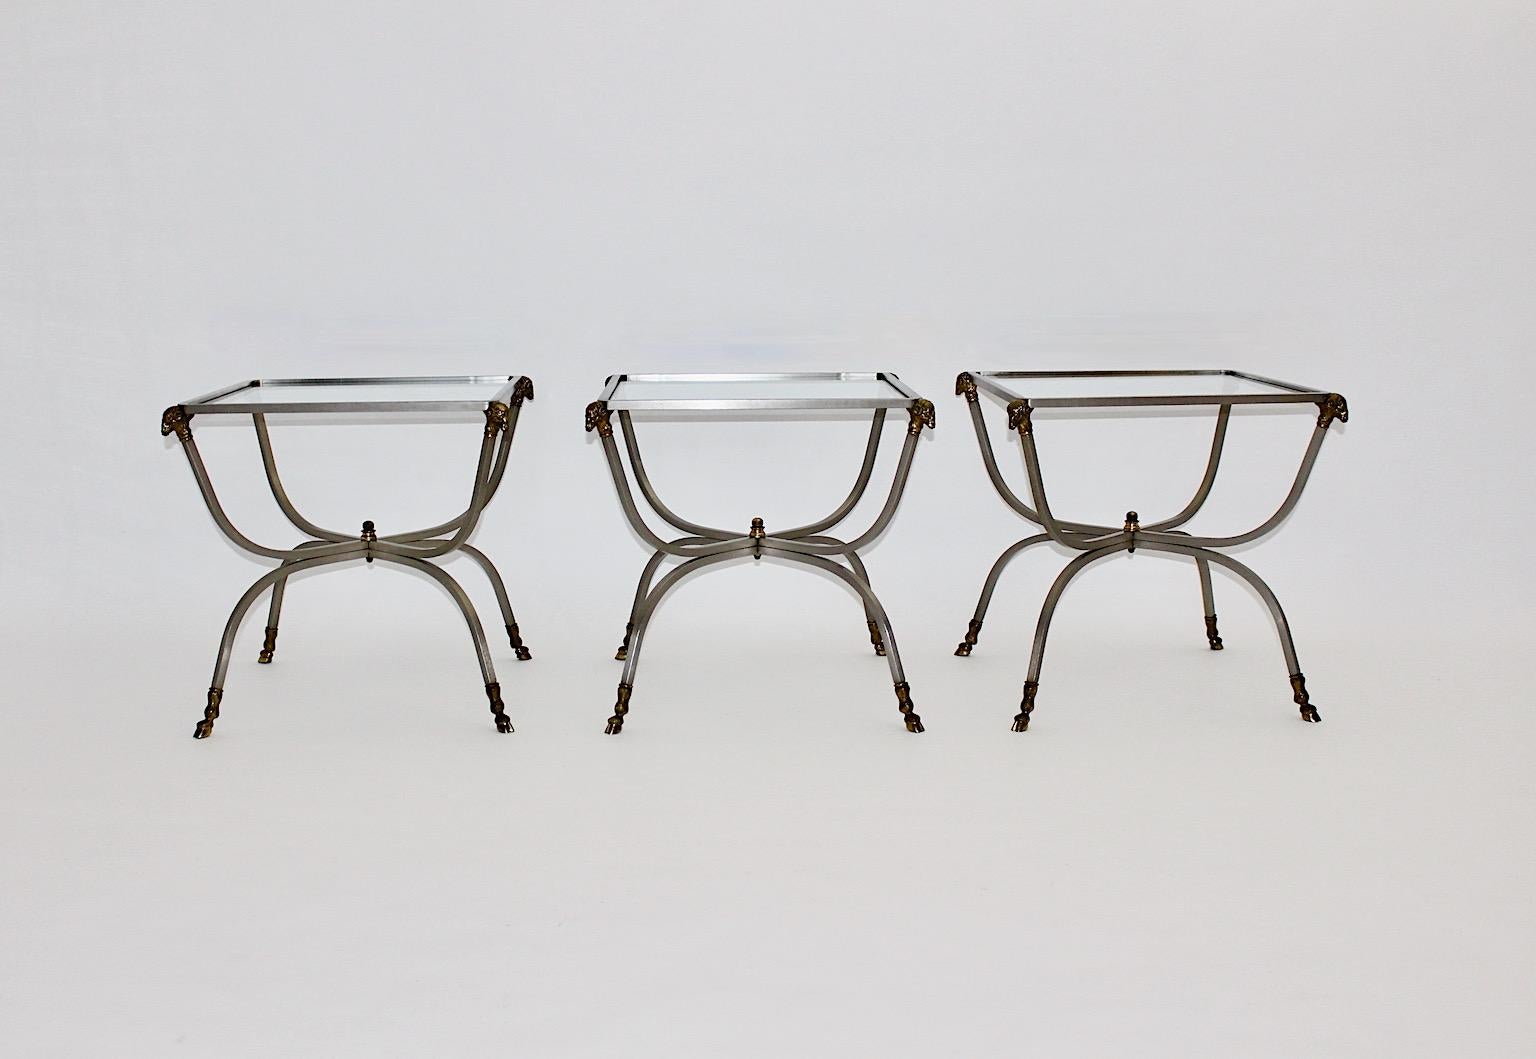 Drei moderne Hollywood Regency Stil Vintage Couchtische Beistelltische oder Sofa Tische Maison Jansen 1970er Jahre Frankreich.
Hochwertige Tische aus Stahl, Messing und klarem Glas vom Pariser Einrichtungshaus Maison Jansen, das unter anderem für